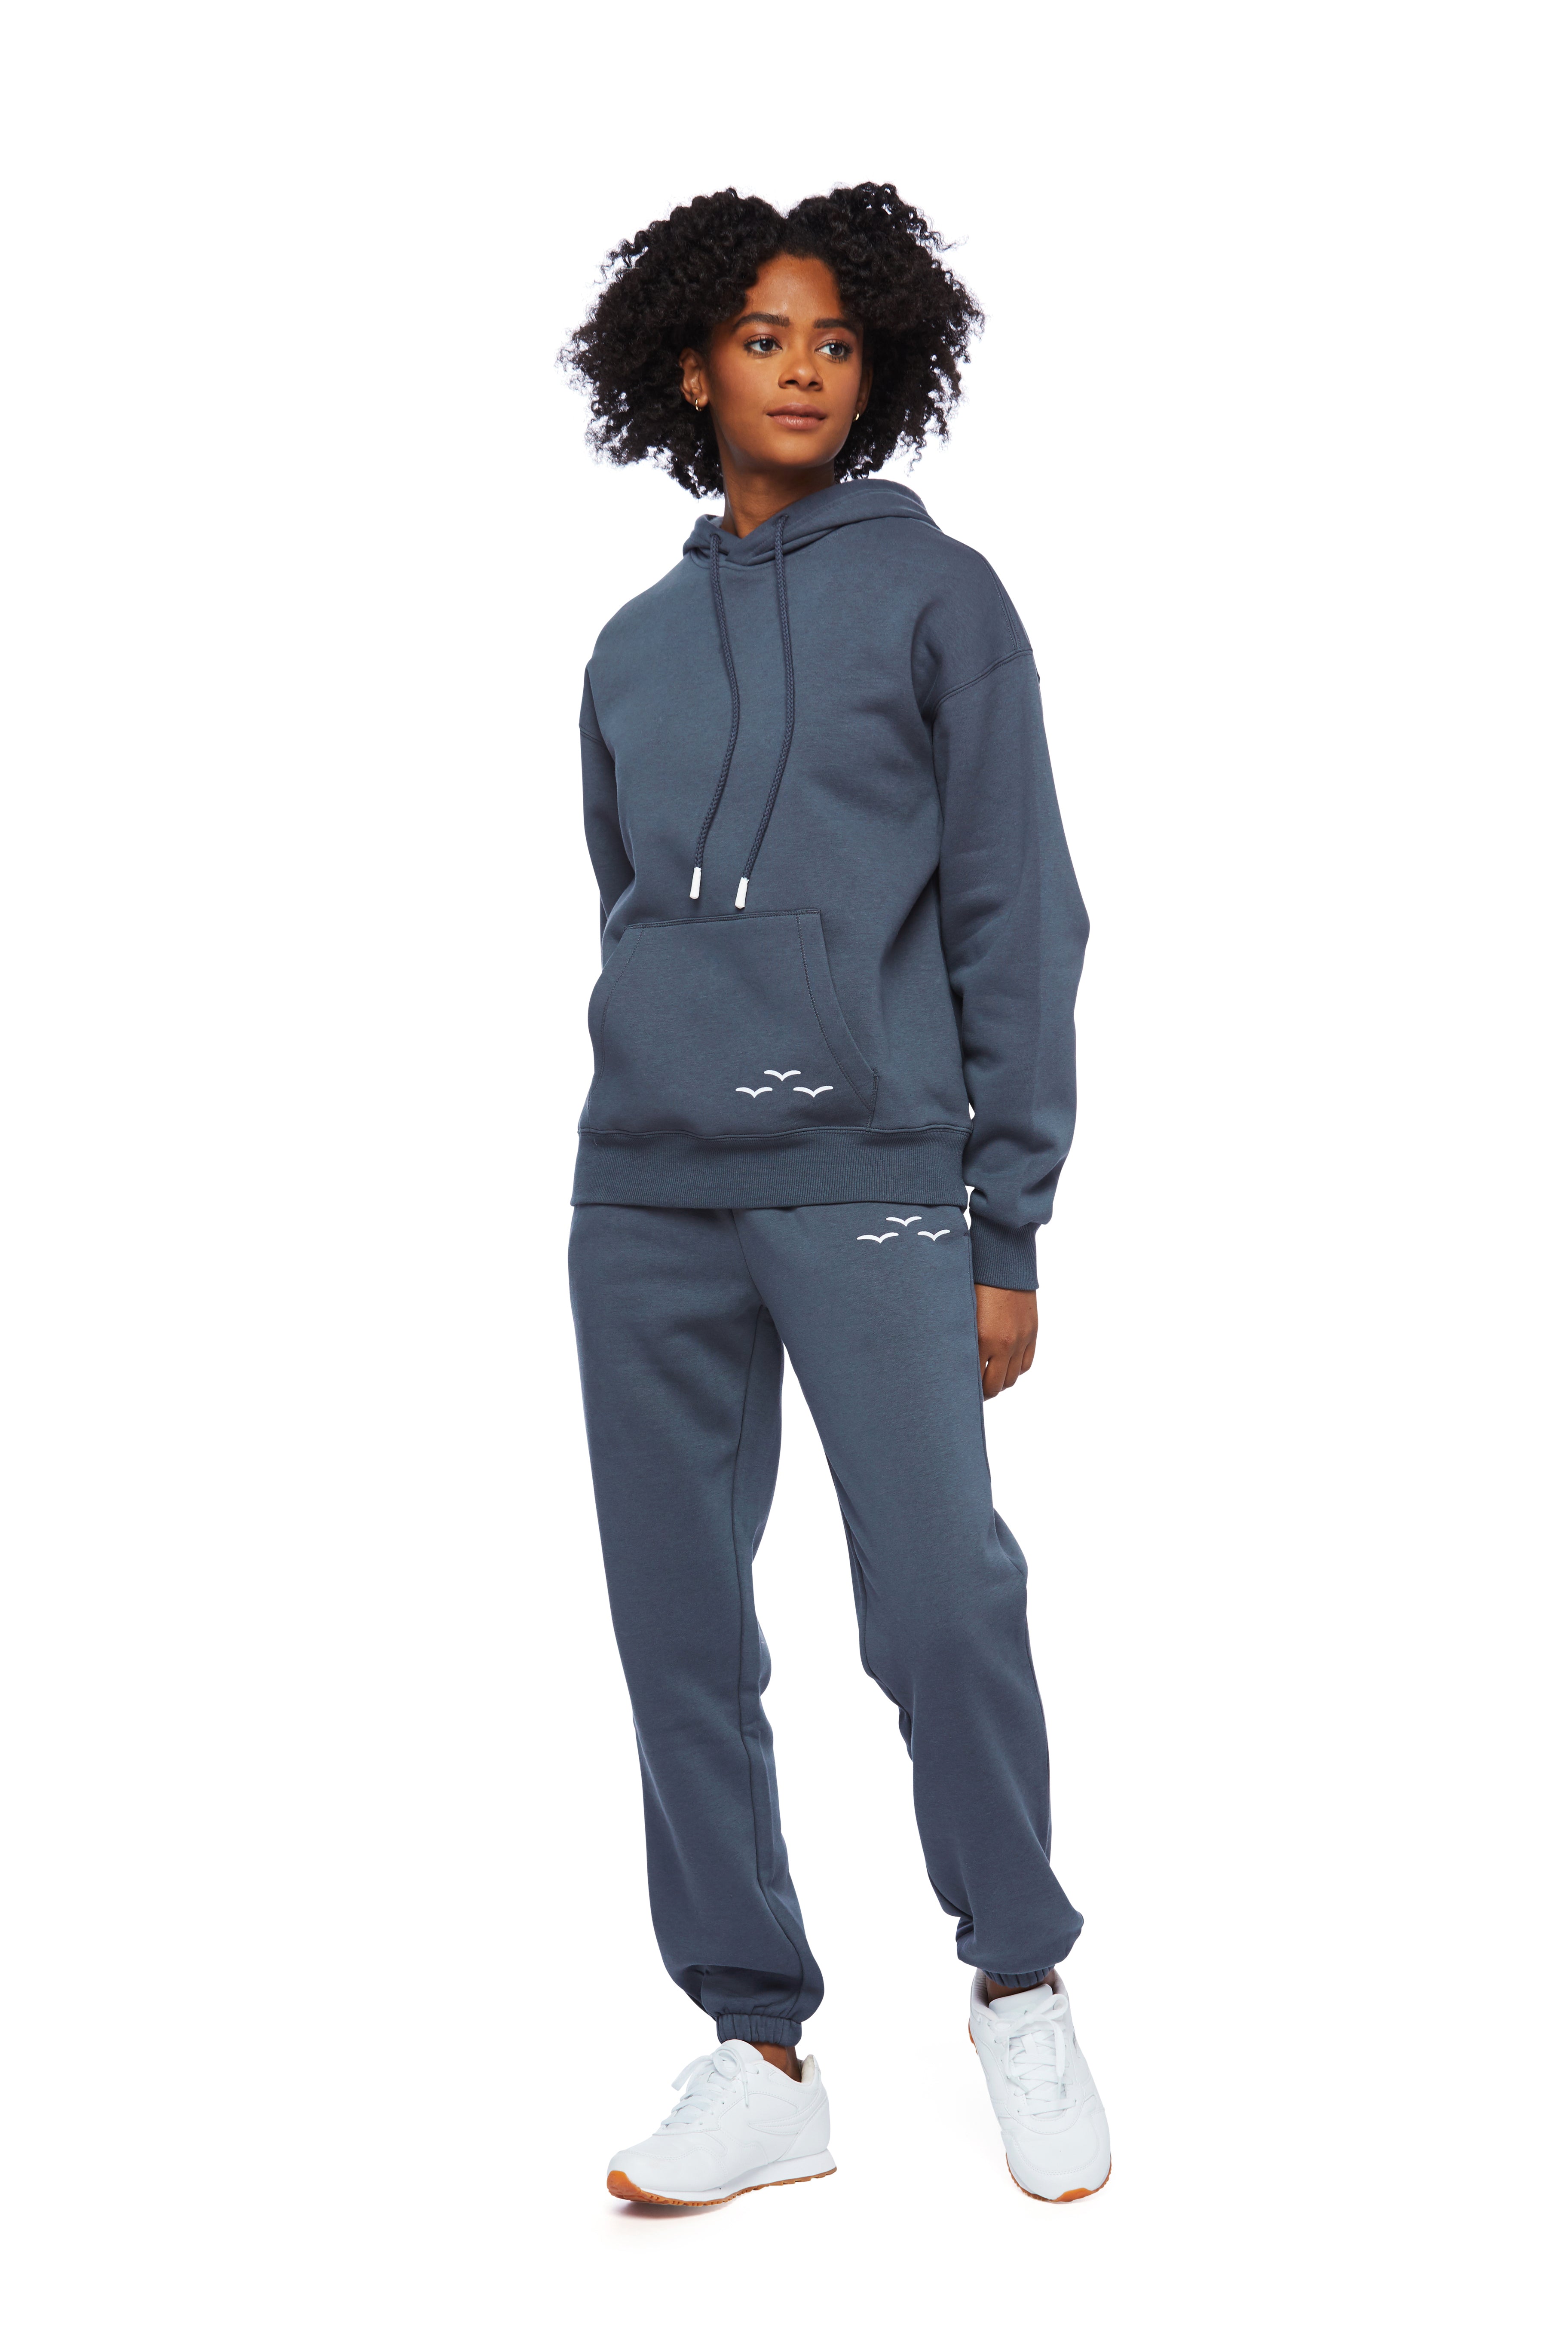 Lazy Pants Children's TrackSuit Set: Sweatpants & Sweatshirt